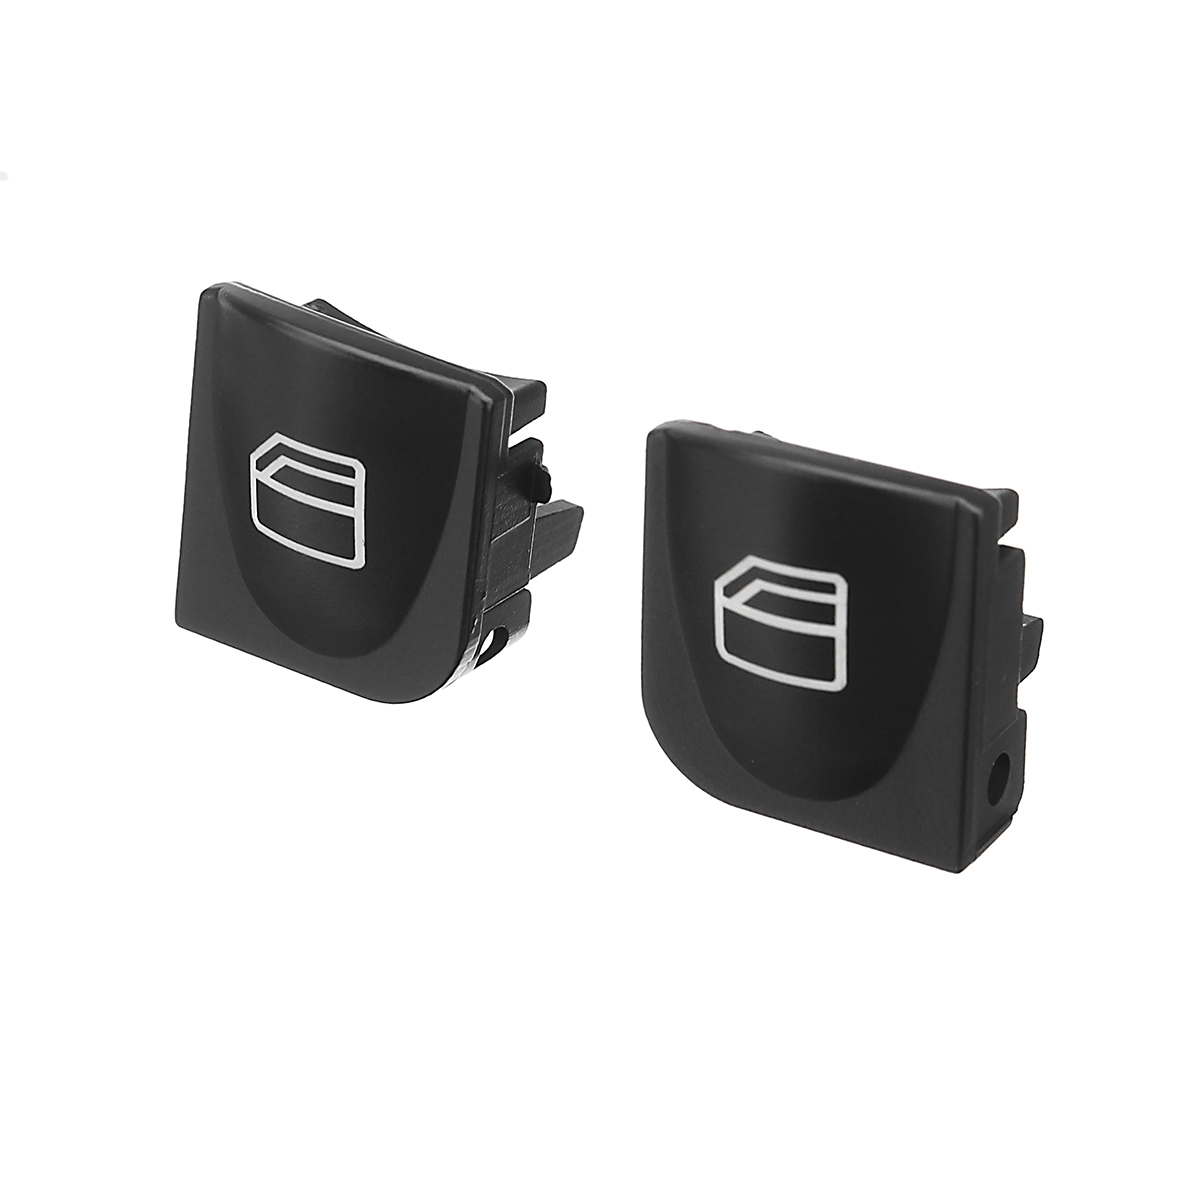 2Pcs Power Window Switch Console Cover Caps Set for Benz C230 C240 - Auto GoShop